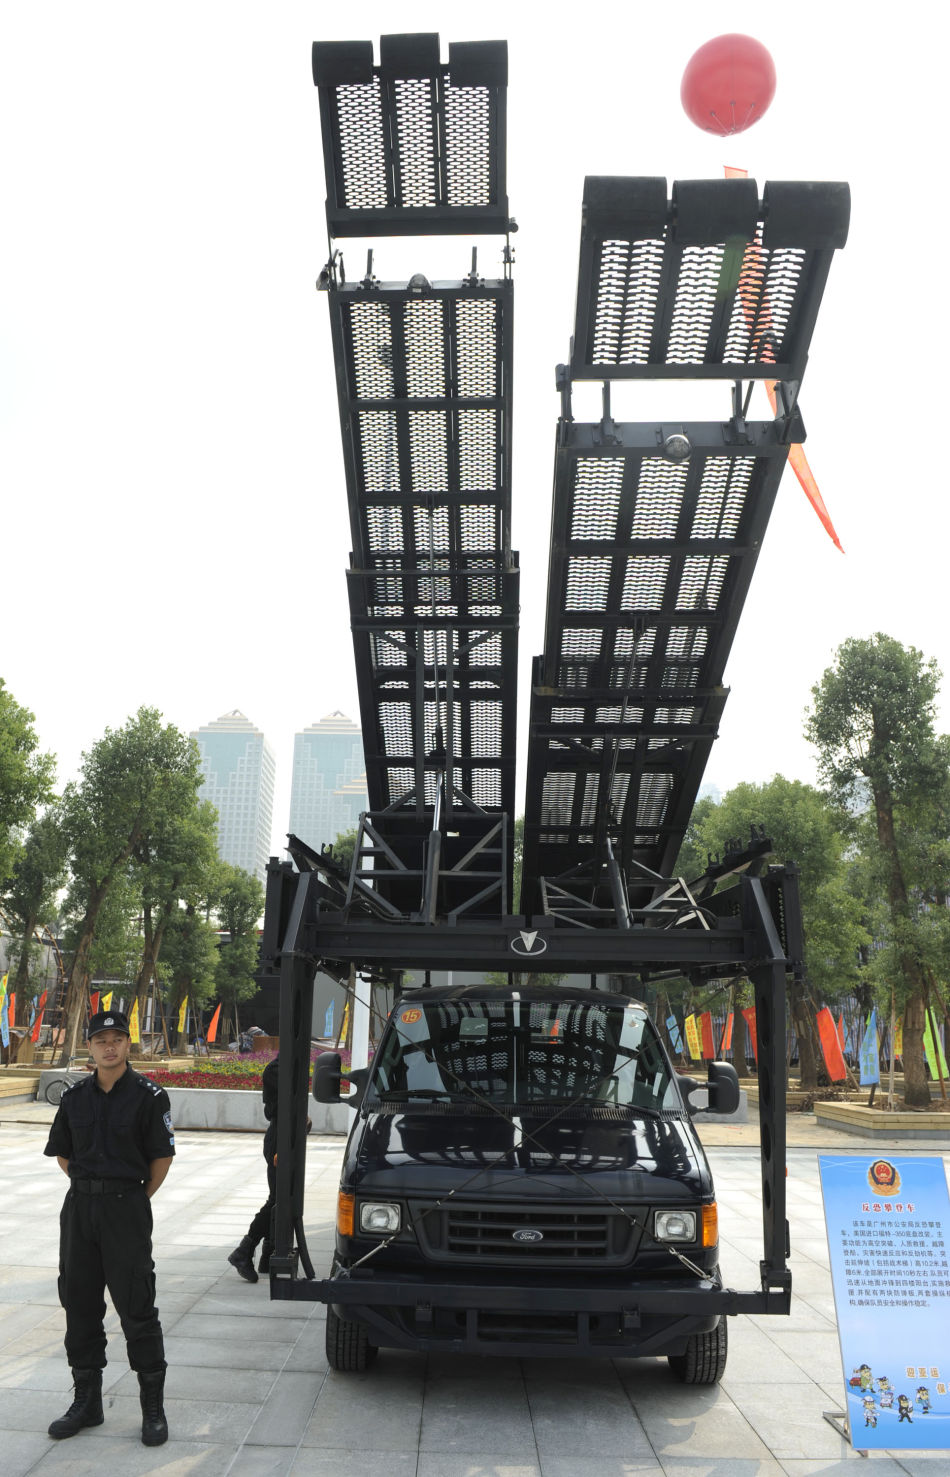 9月25日,活动现场展示的广州警方水陆两栖装甲清障车